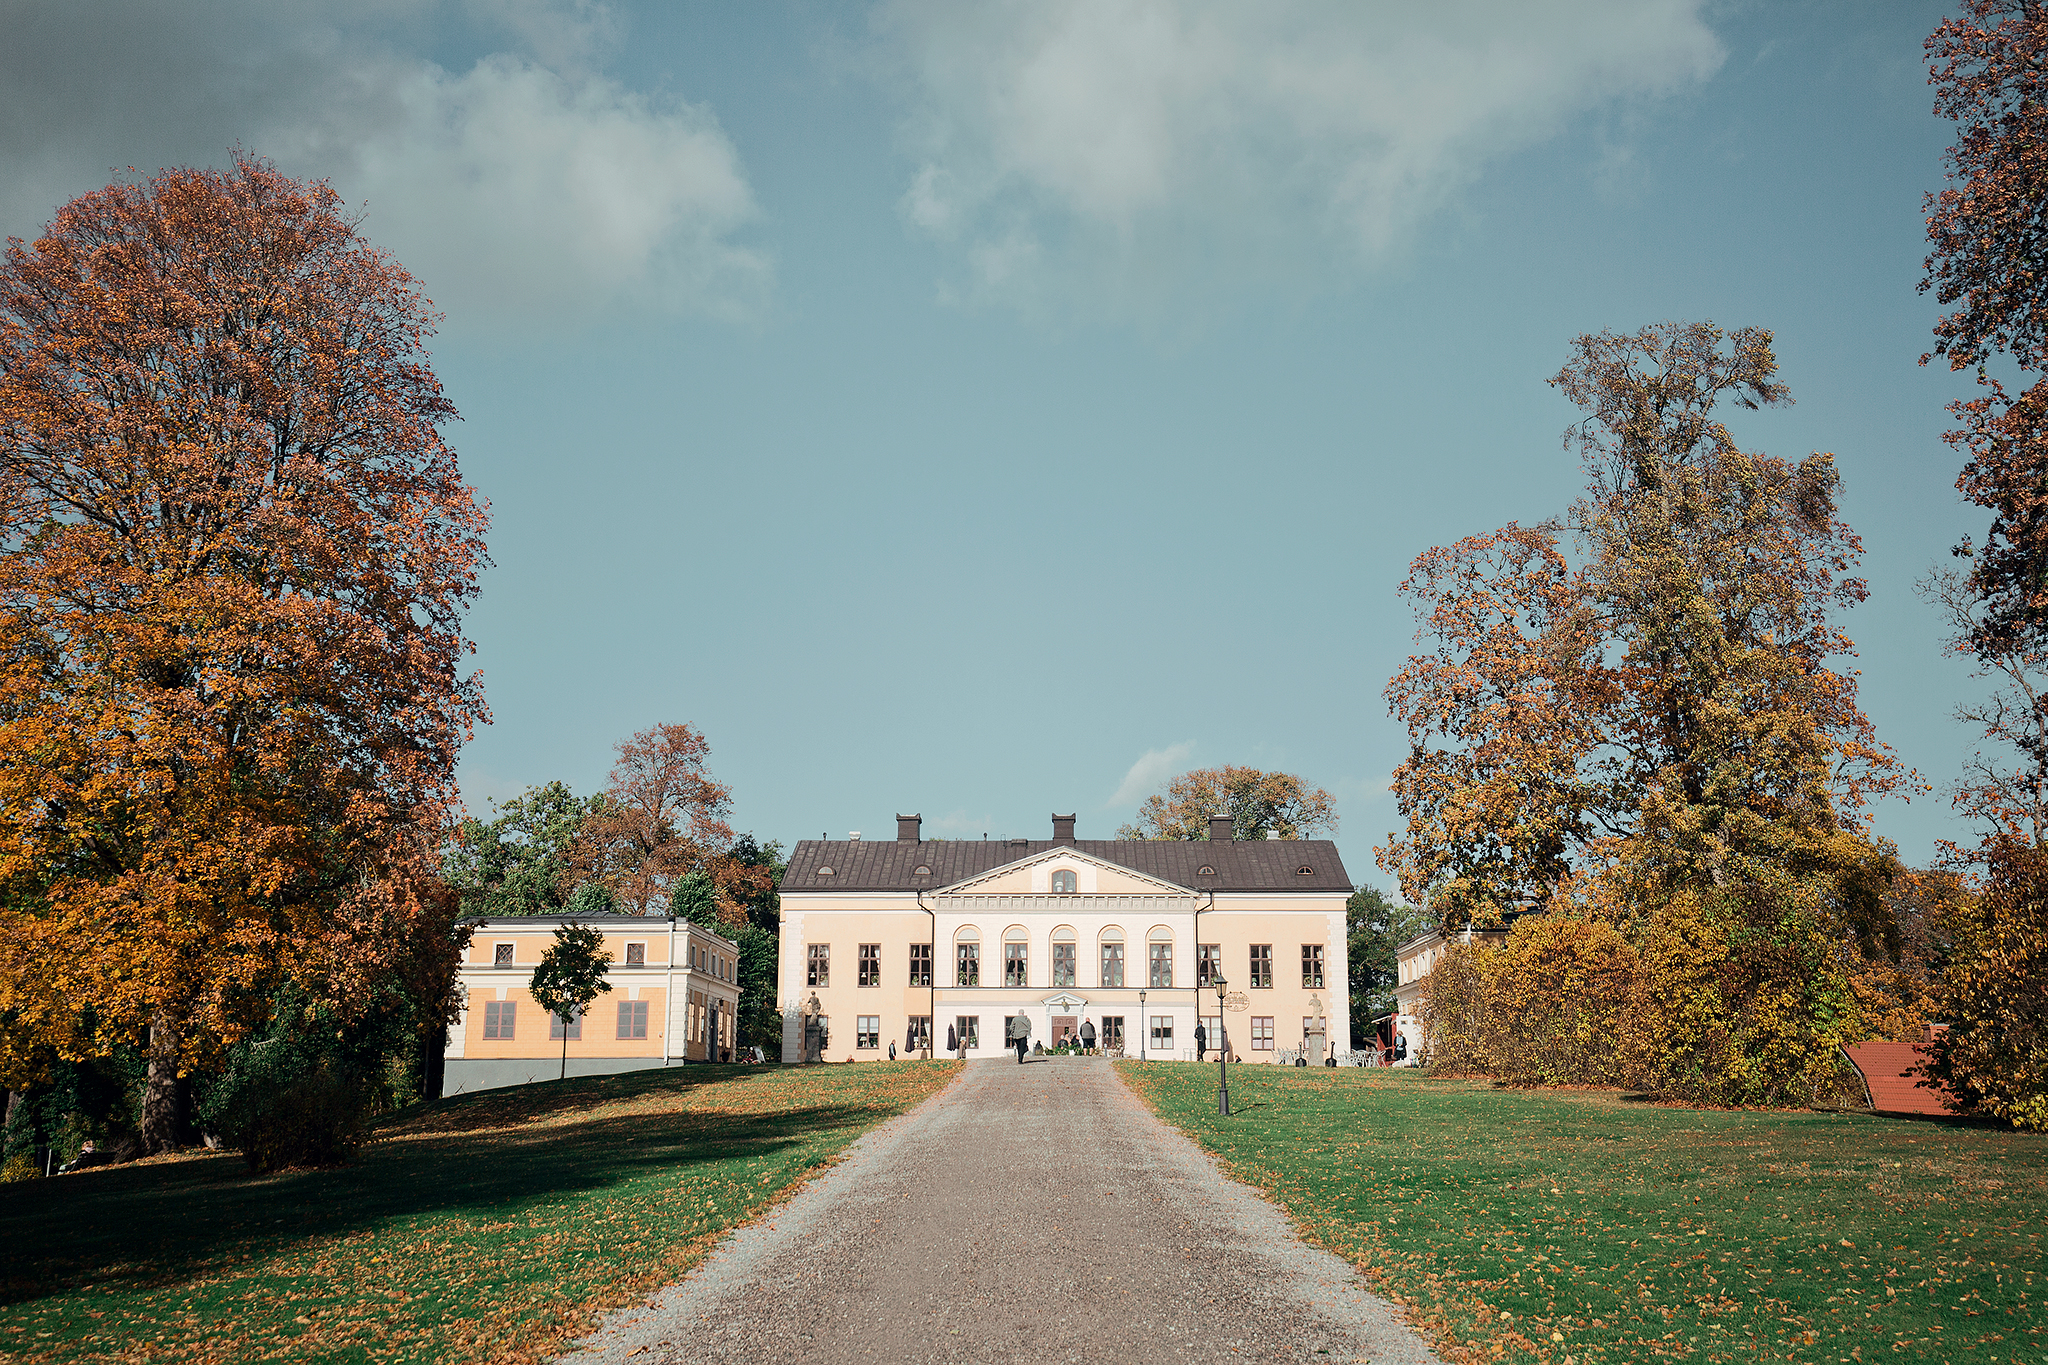 Taxing slott - Norra Europas största kakbord